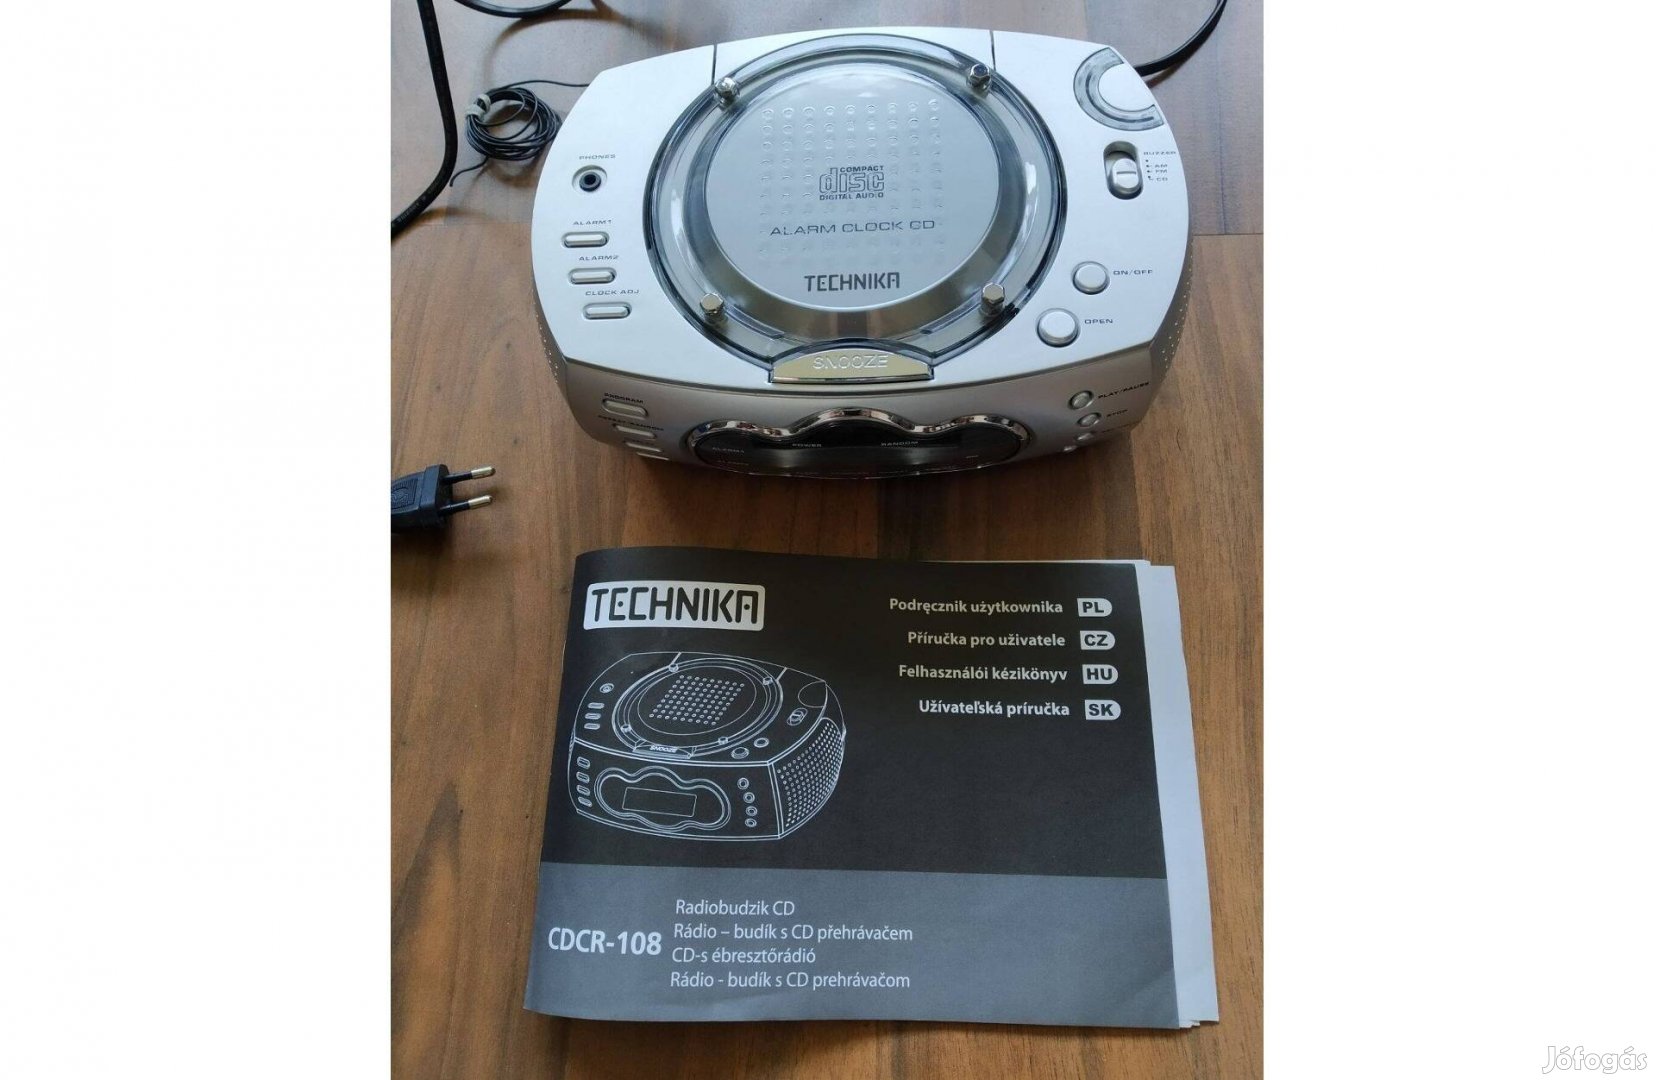 Technika Cdcr-108 CD Rádiós ébresztőóra használati utasitással